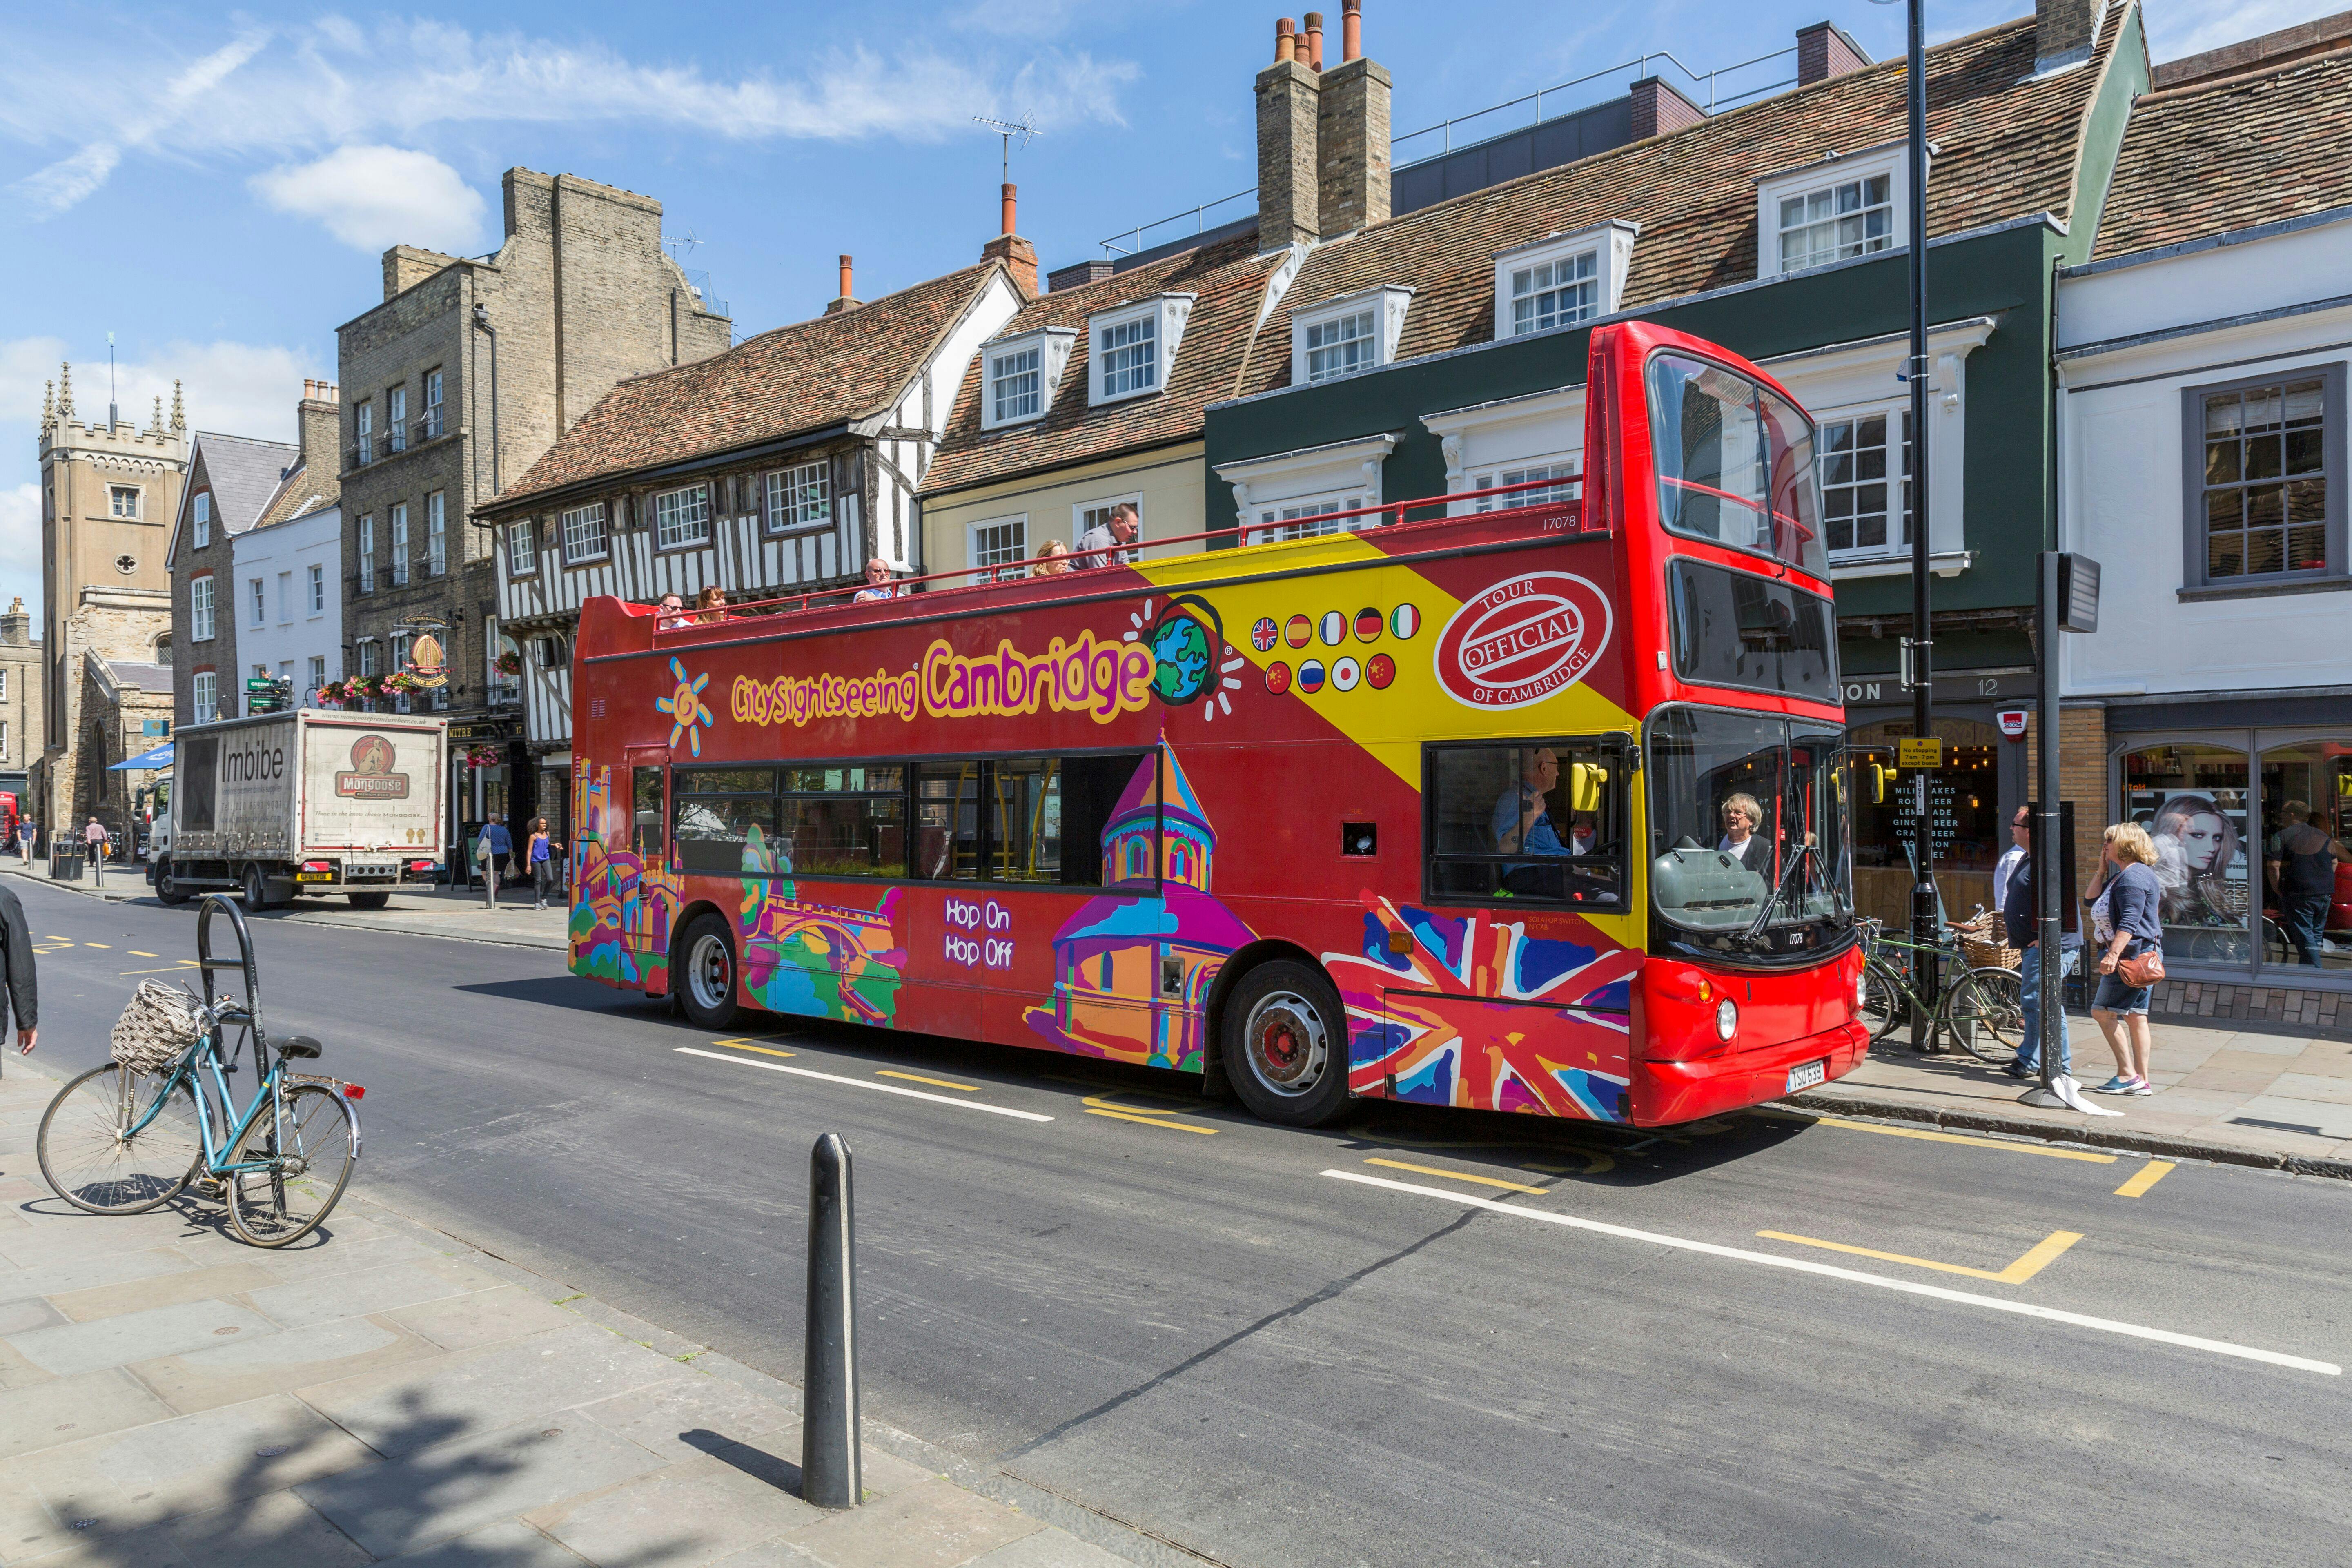 Excursão turística em ônibus hop-on hop-off pela cidade de Cambridge